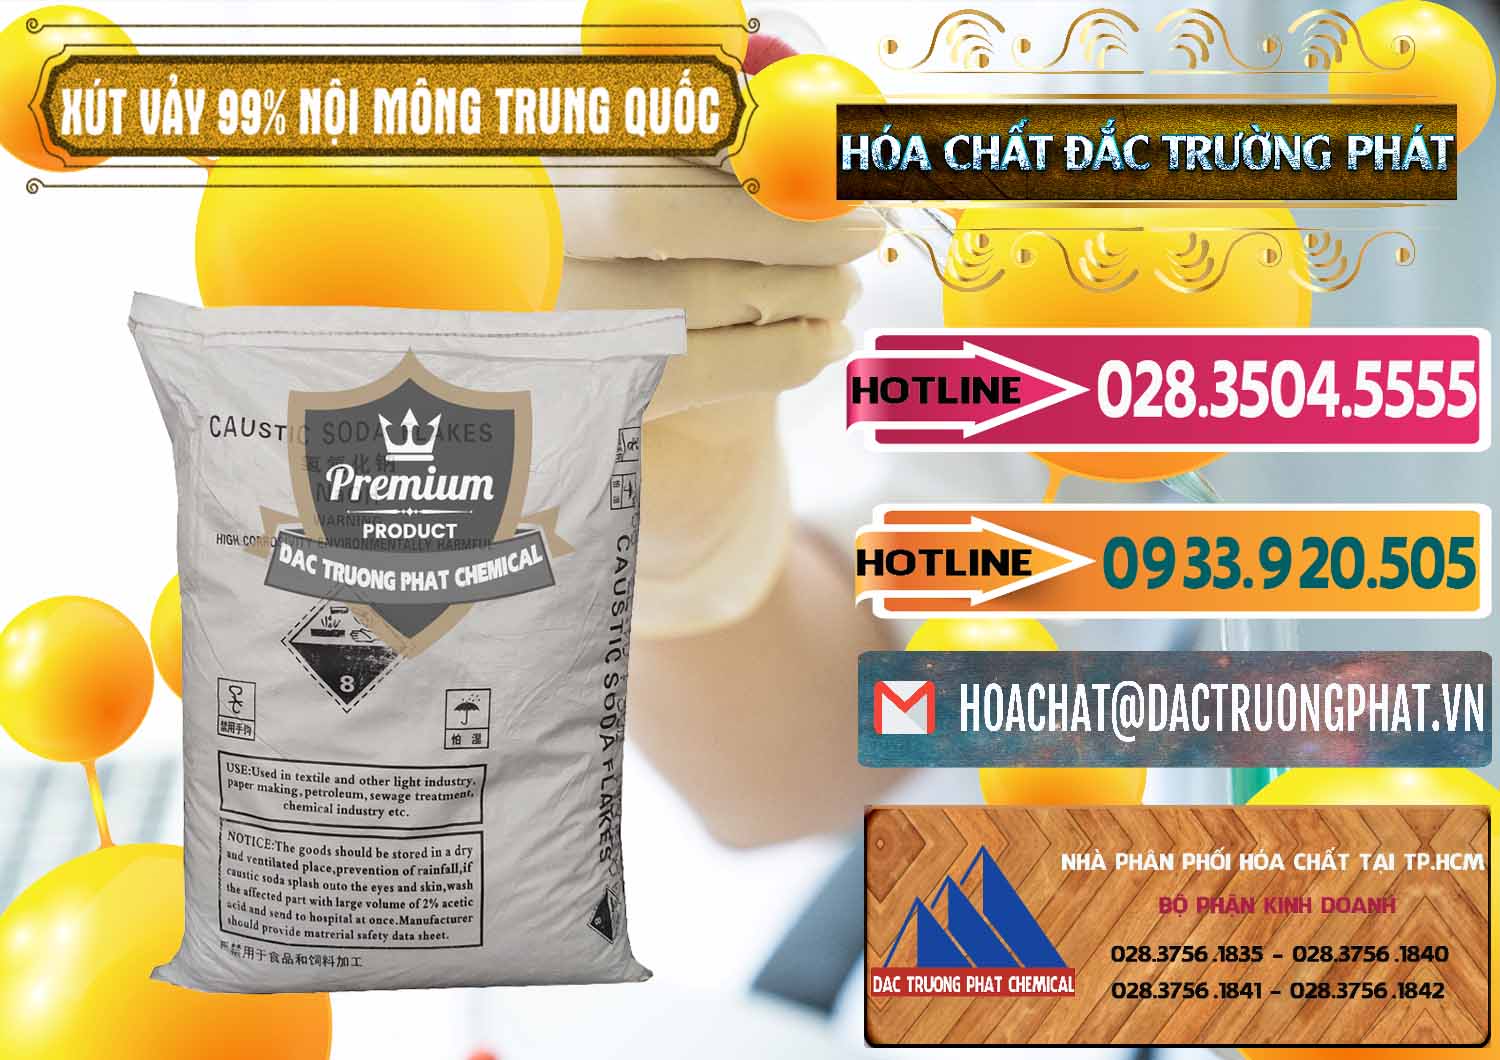 Chuyên bán và phân phối Xút Vảy - NaOH Vảy 99% Nội Mông Trung Quốc China - 0228 - Cty phân phối & kinh doanh hóa chất tại TP.HCM - dactruongphat.vn